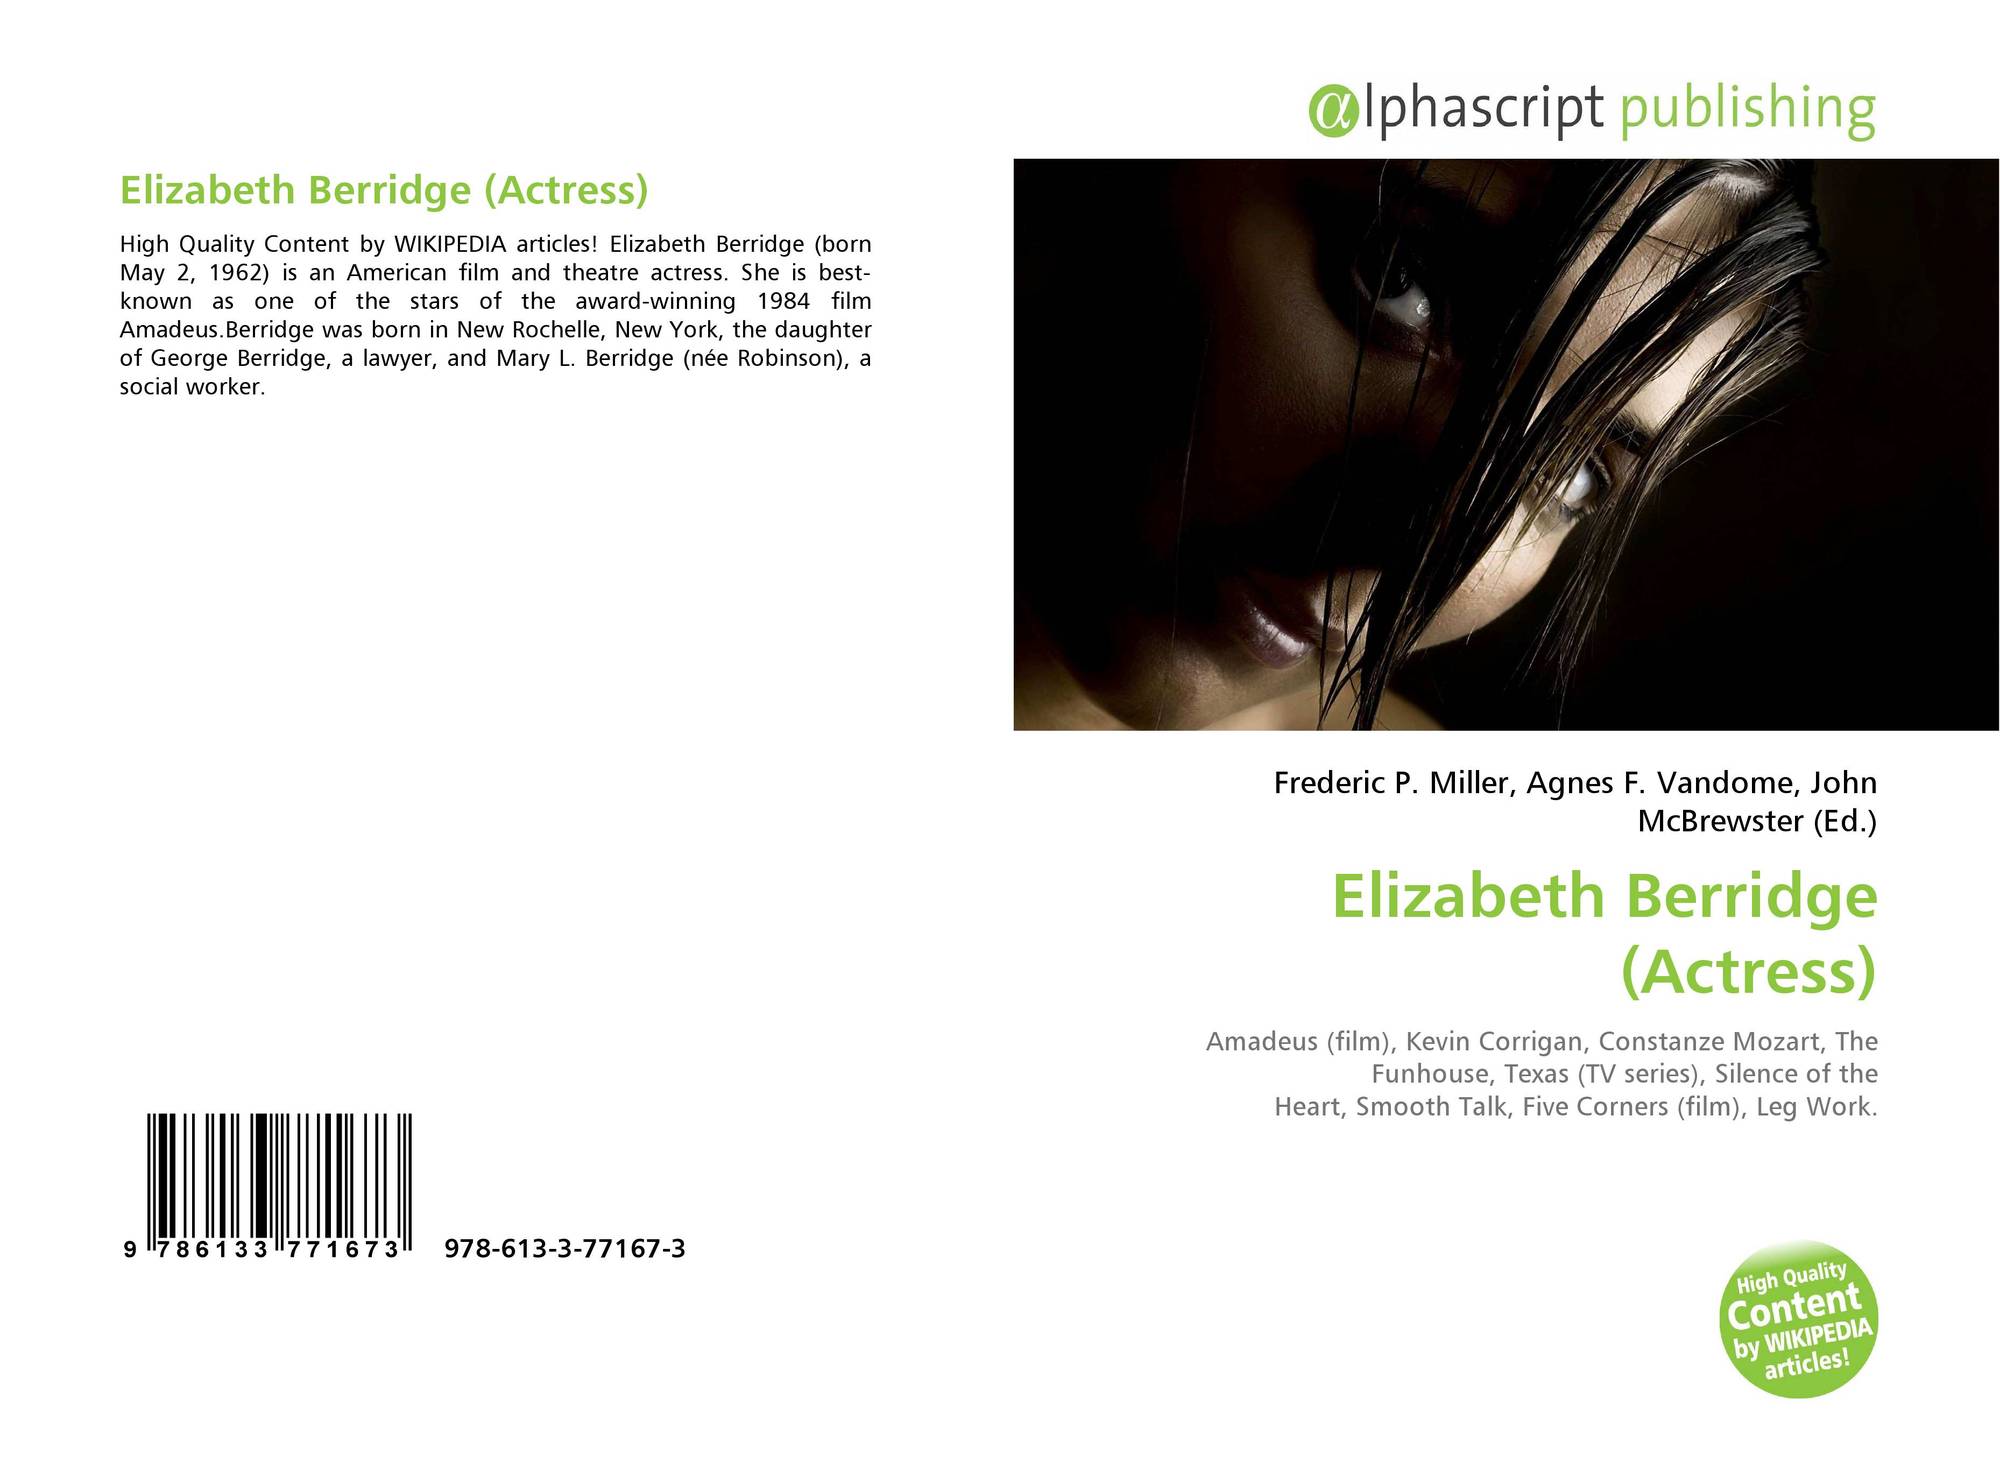 Berridge actress elizabeth Elizabeth Berridge